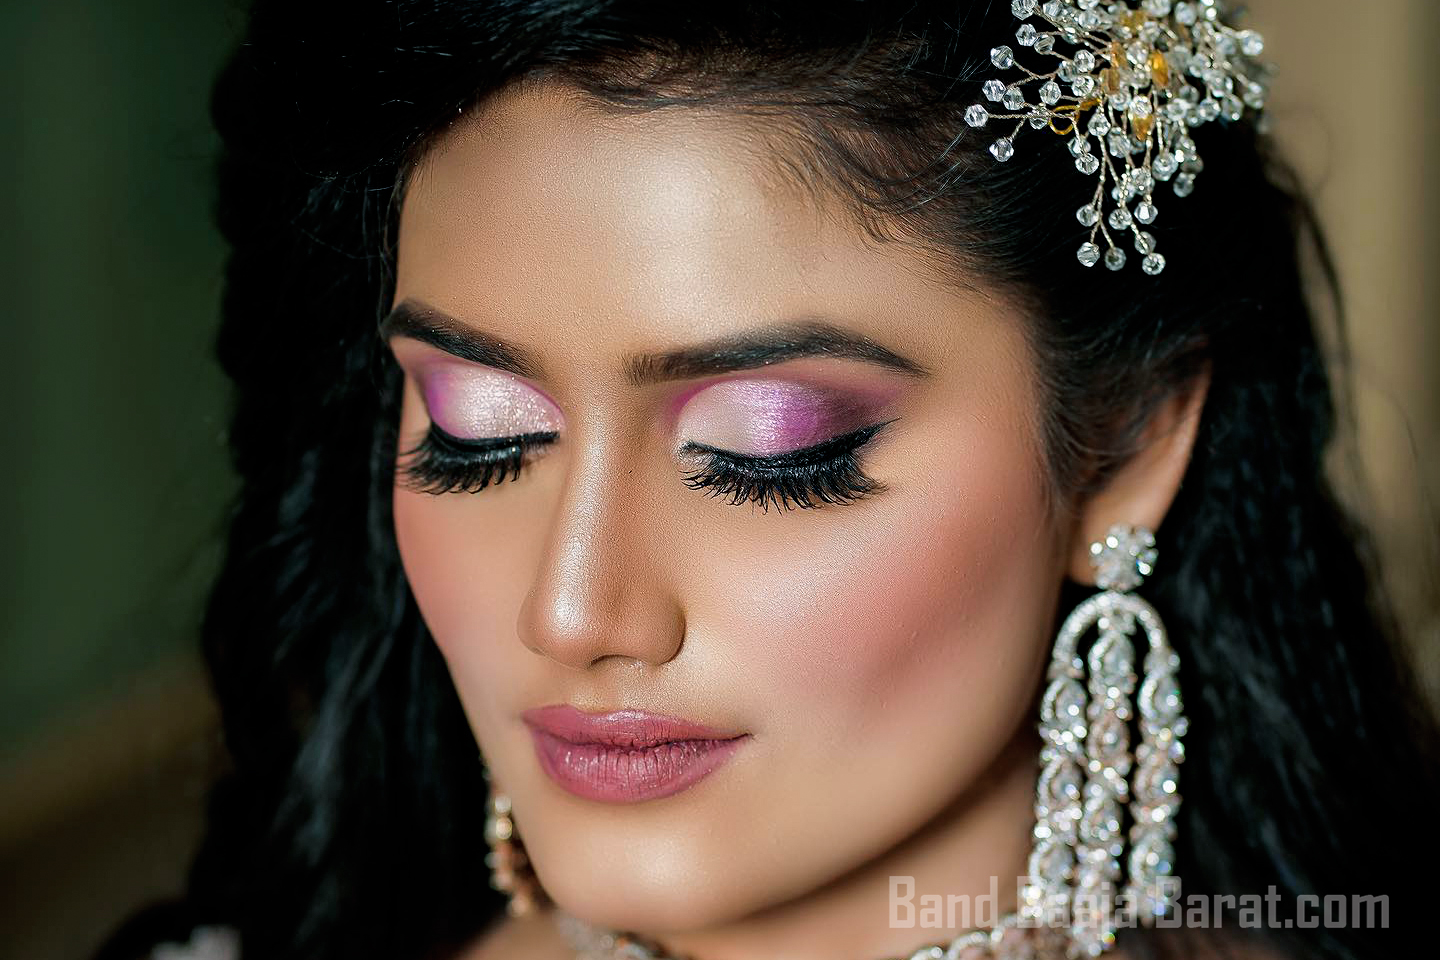 Makeup Artist Meenakshi Dutt